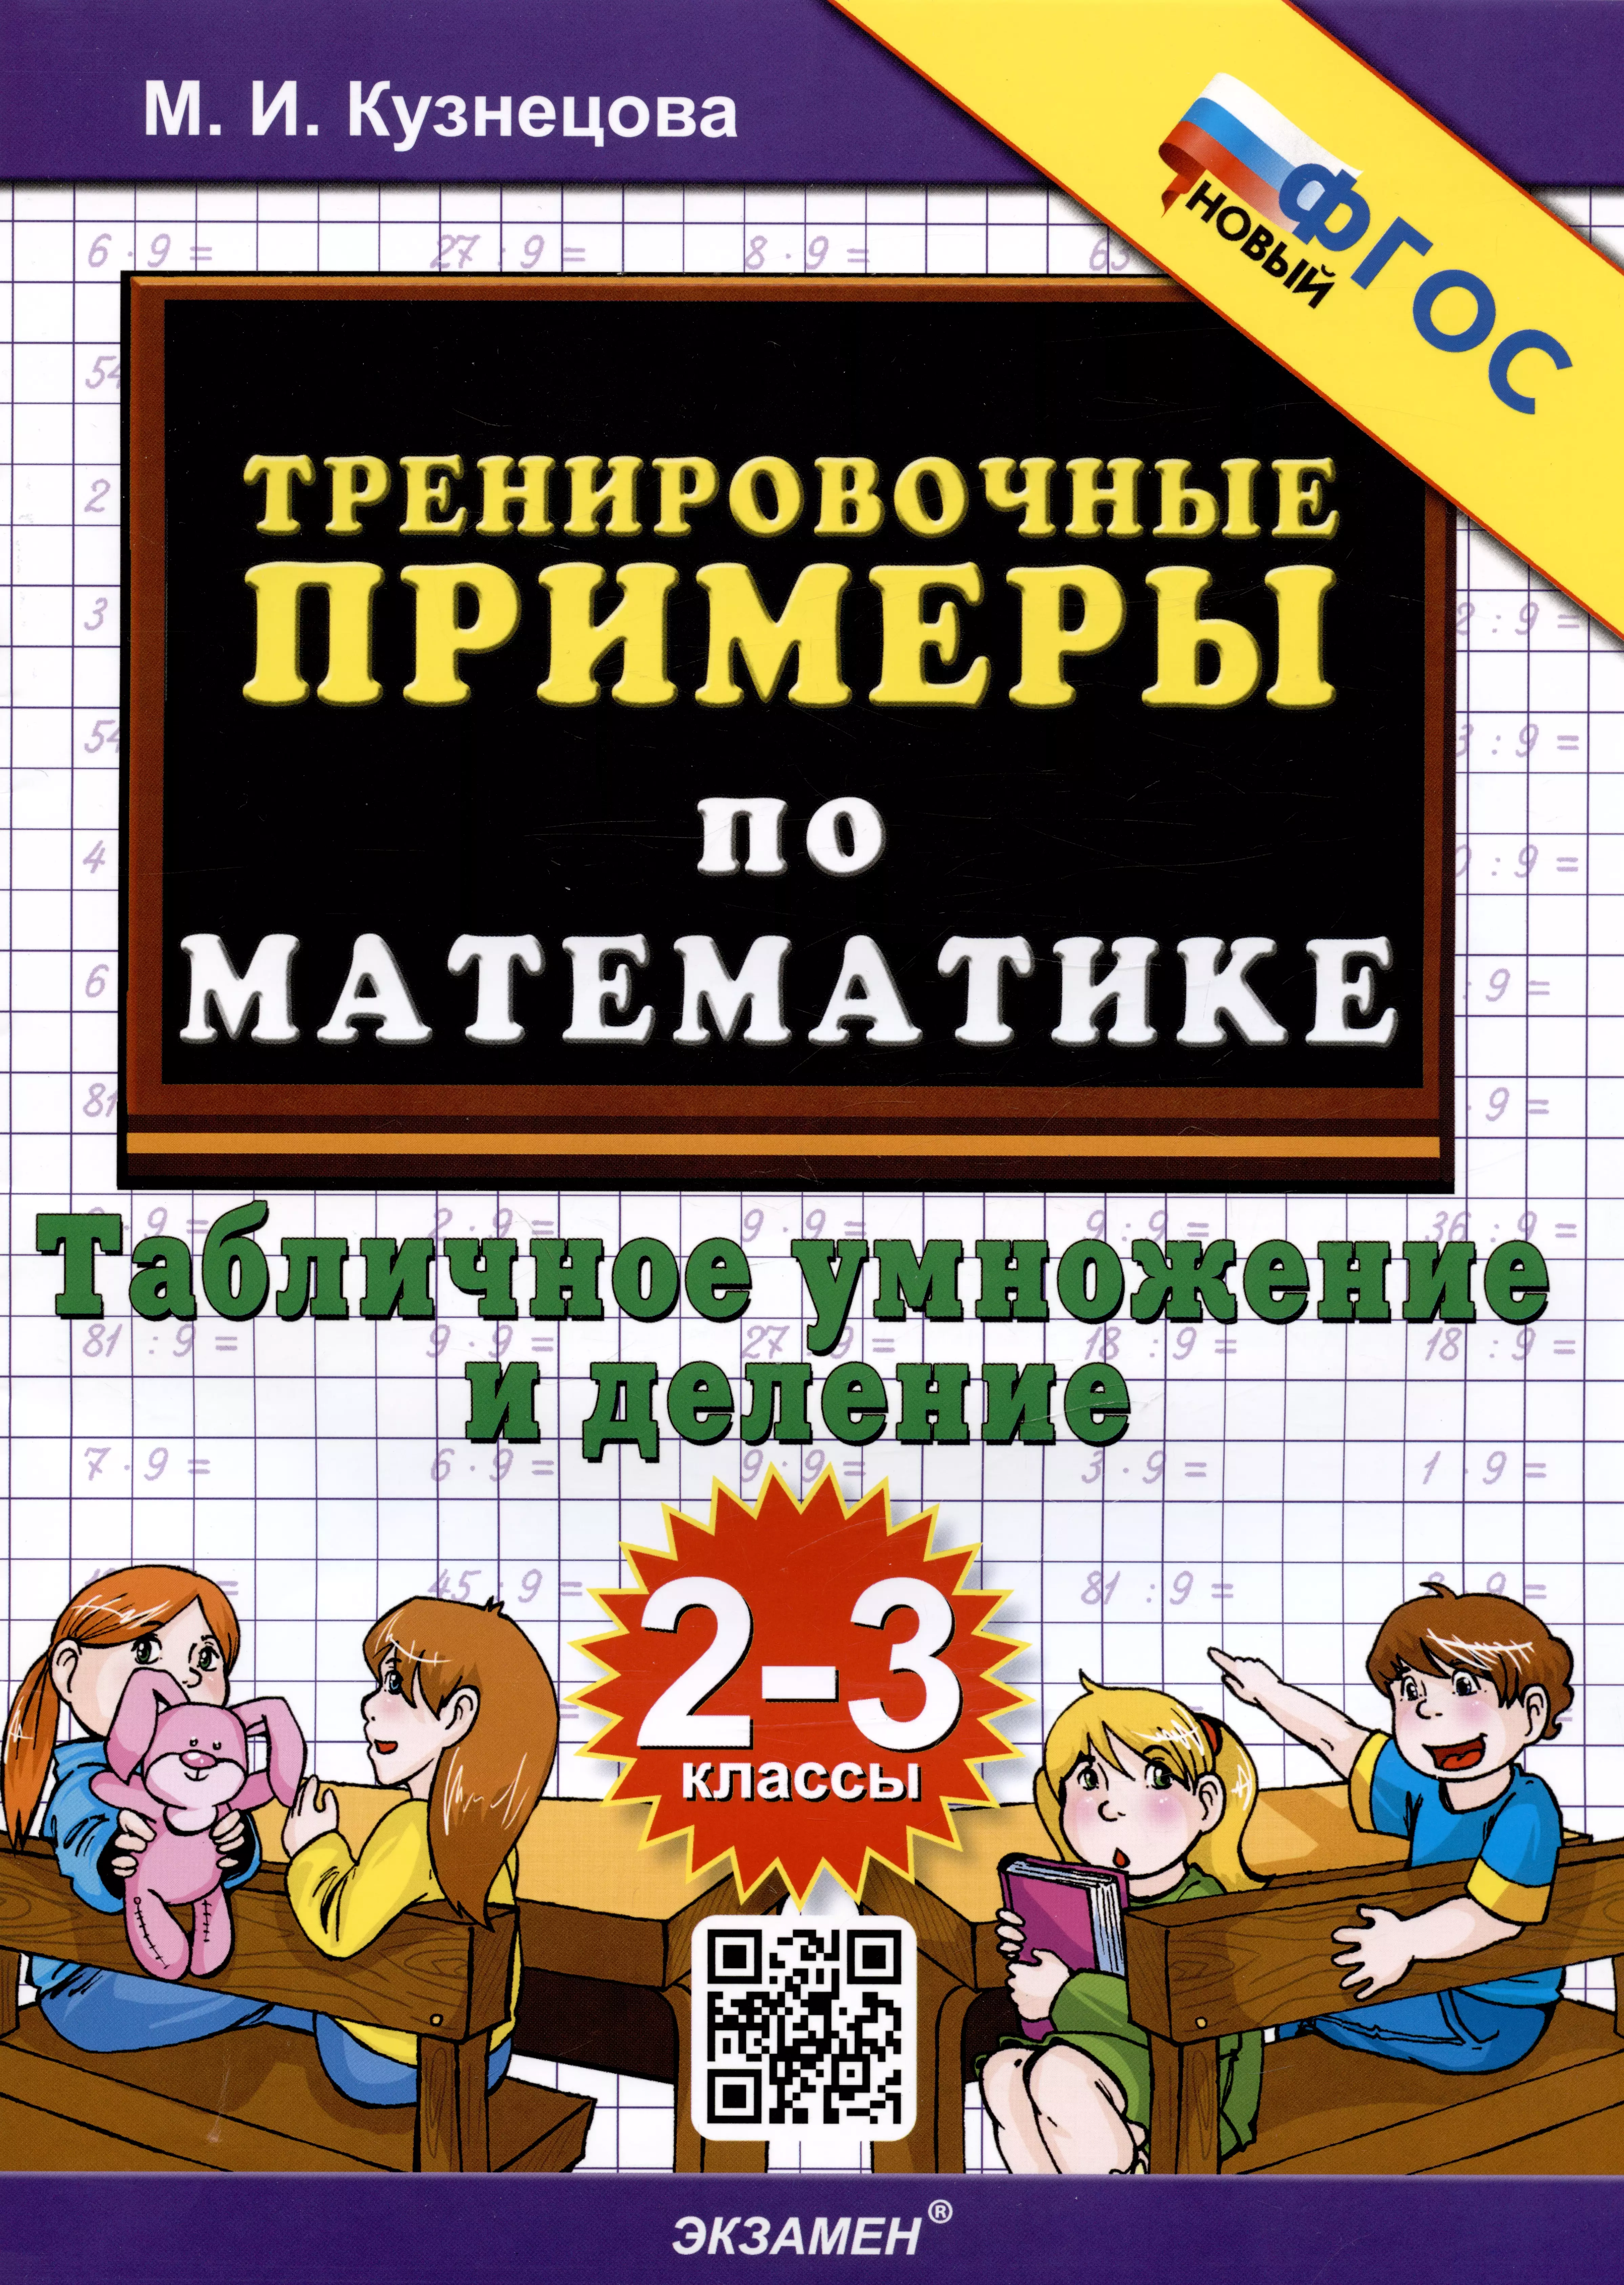 Кузнецова Марта Ивановна - Тренировочные примеры по математике. Табличное умножение и деление. 2-3 классы